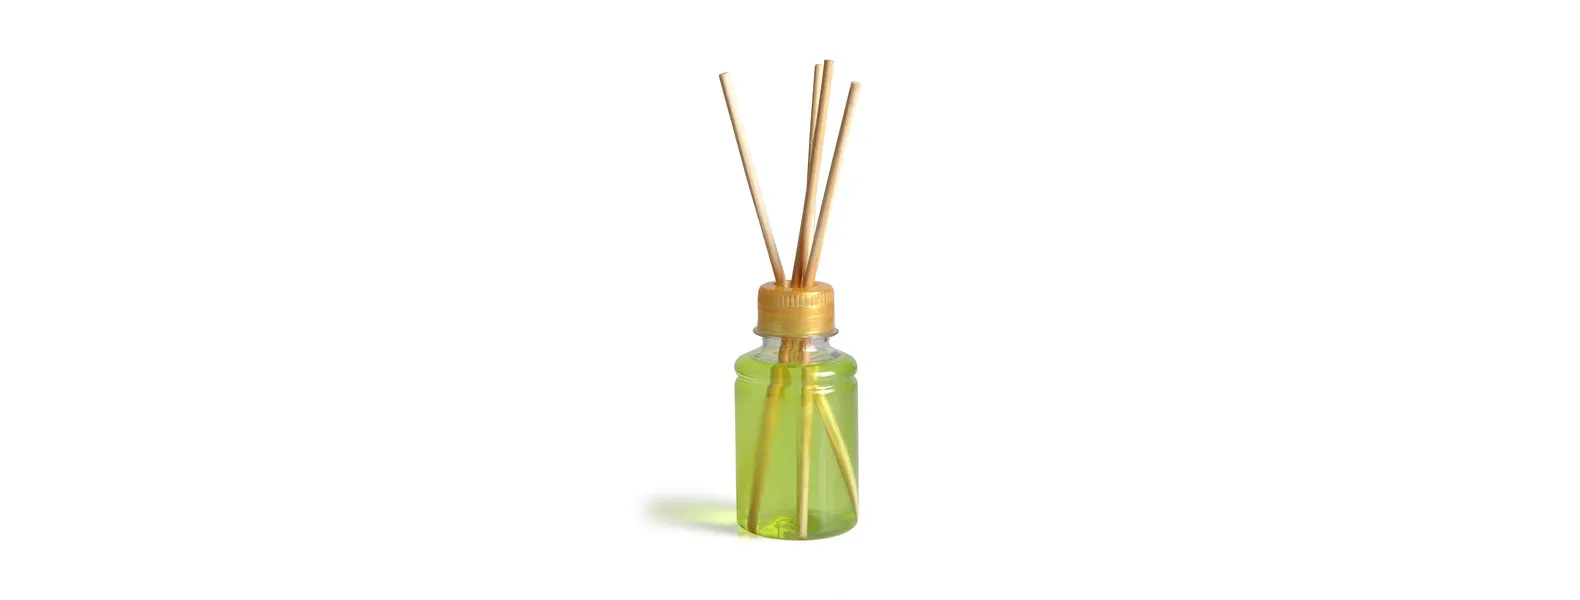 Kit para bandeja e aromatizador. Conta com bandeja redonda em bambu e aromatizador de ambiente com fragrância de bambu.